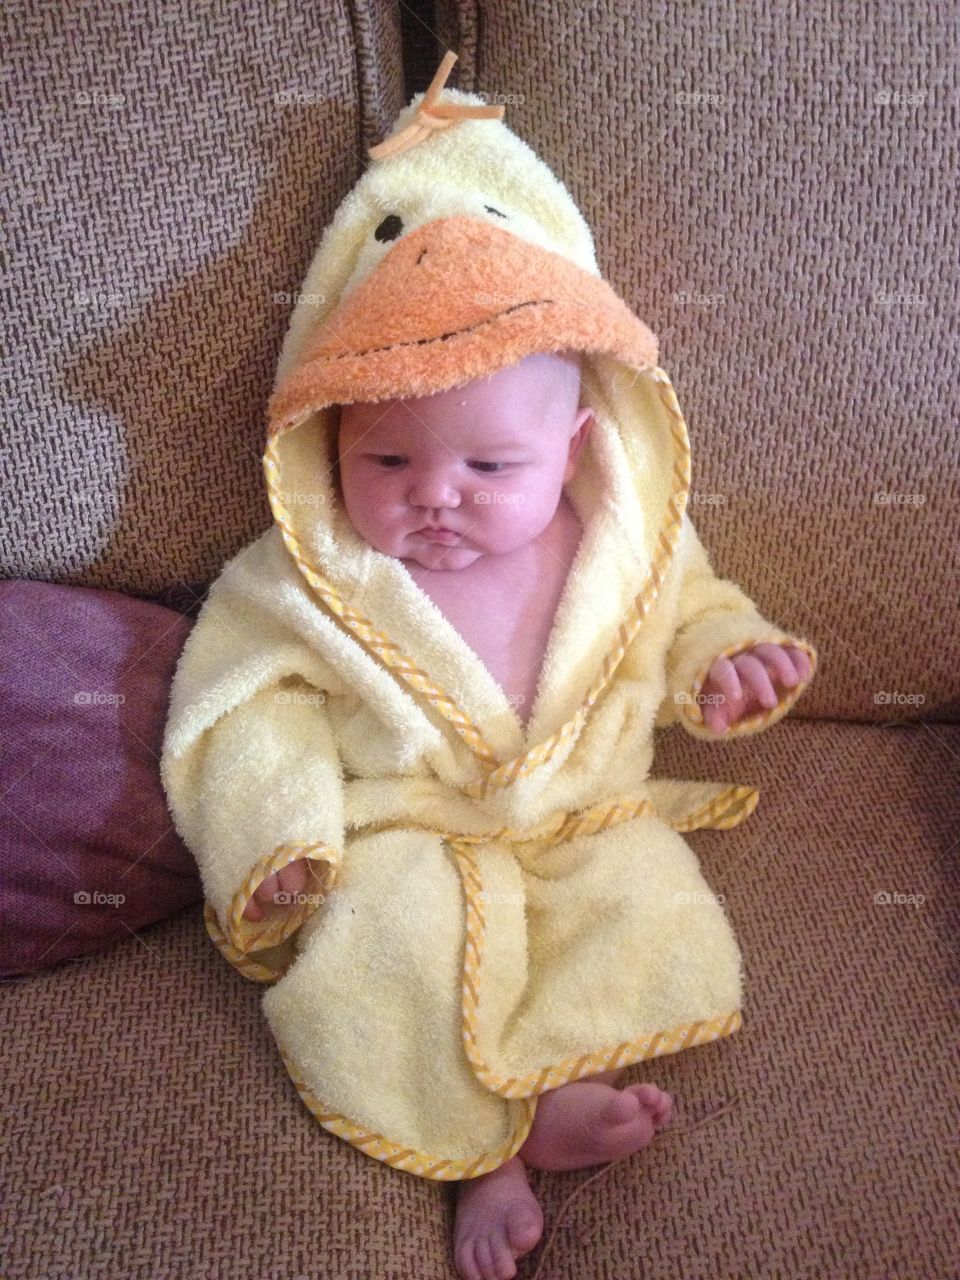 Ducky bathrobe. Asher